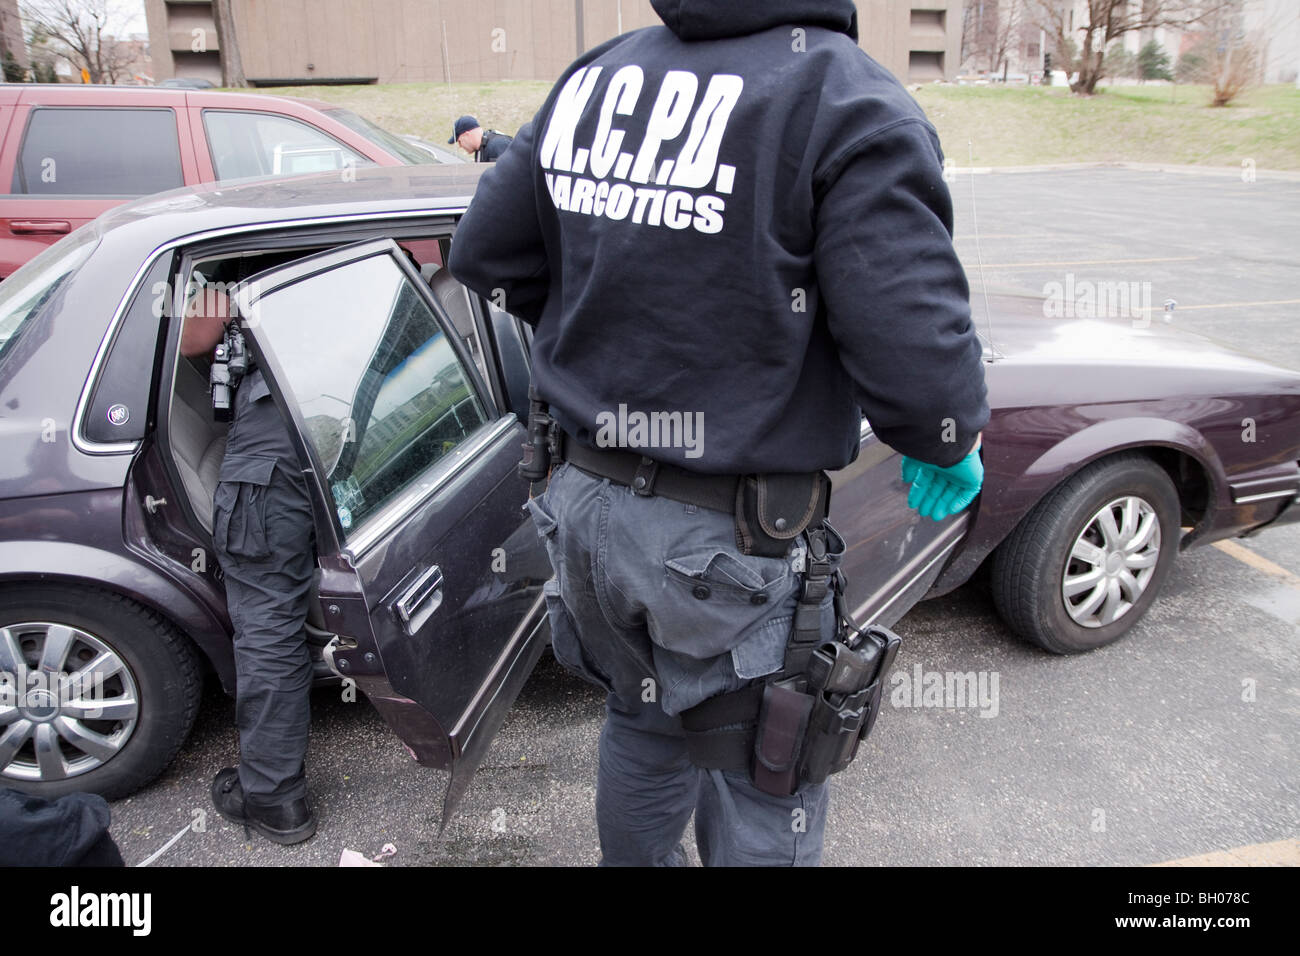 Les fonctionnaires de police soupçonnés de véhicule recherche revendeur de drogue après avoir arrêté le conducteur. Banque D'Images